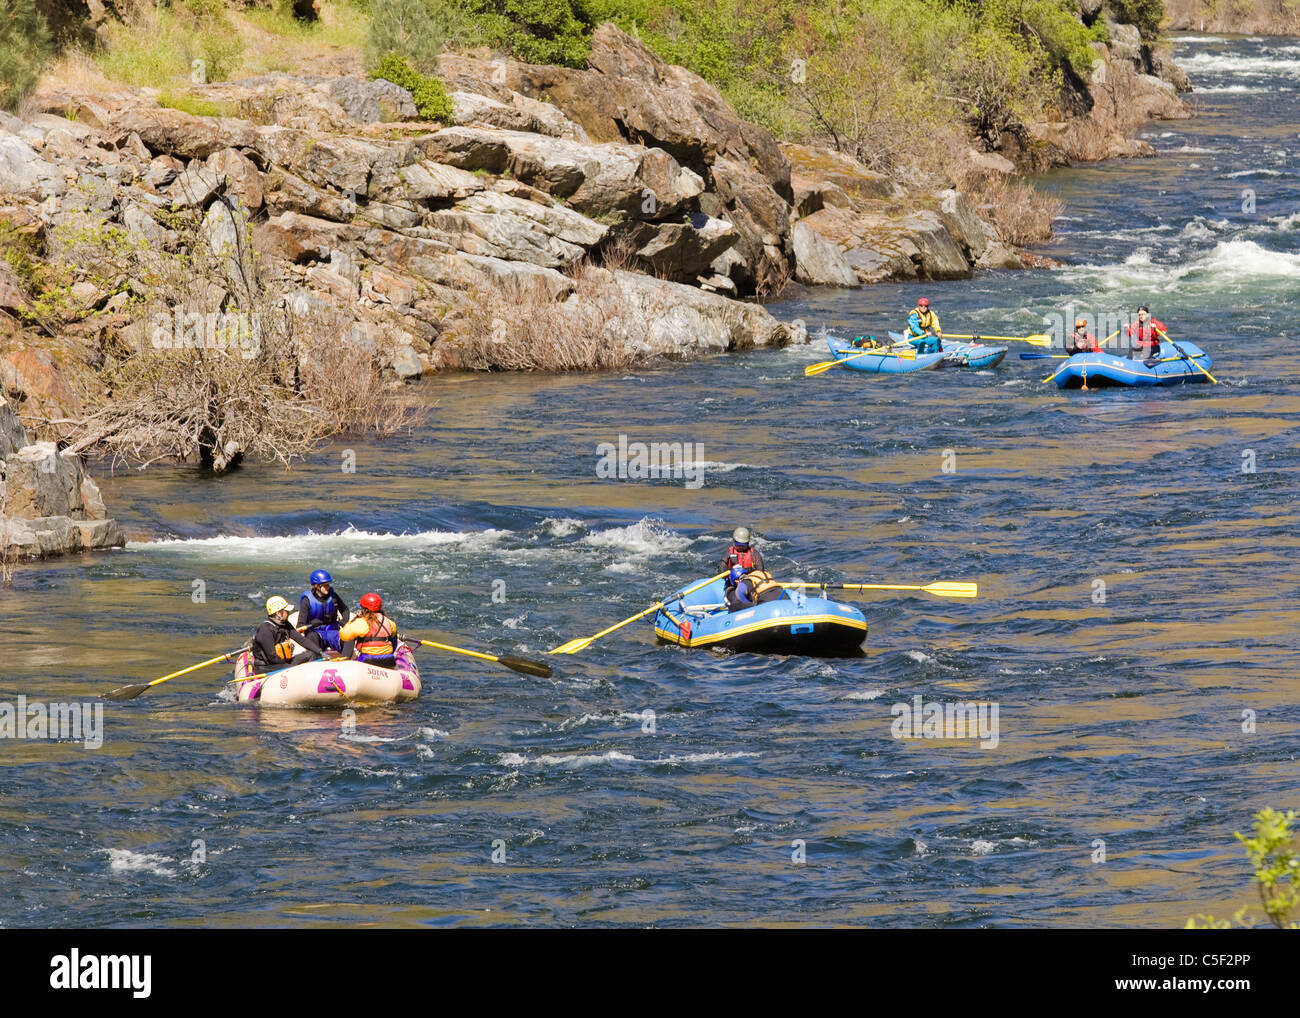 Le rafting sur la rivière Merced Banque D'Images